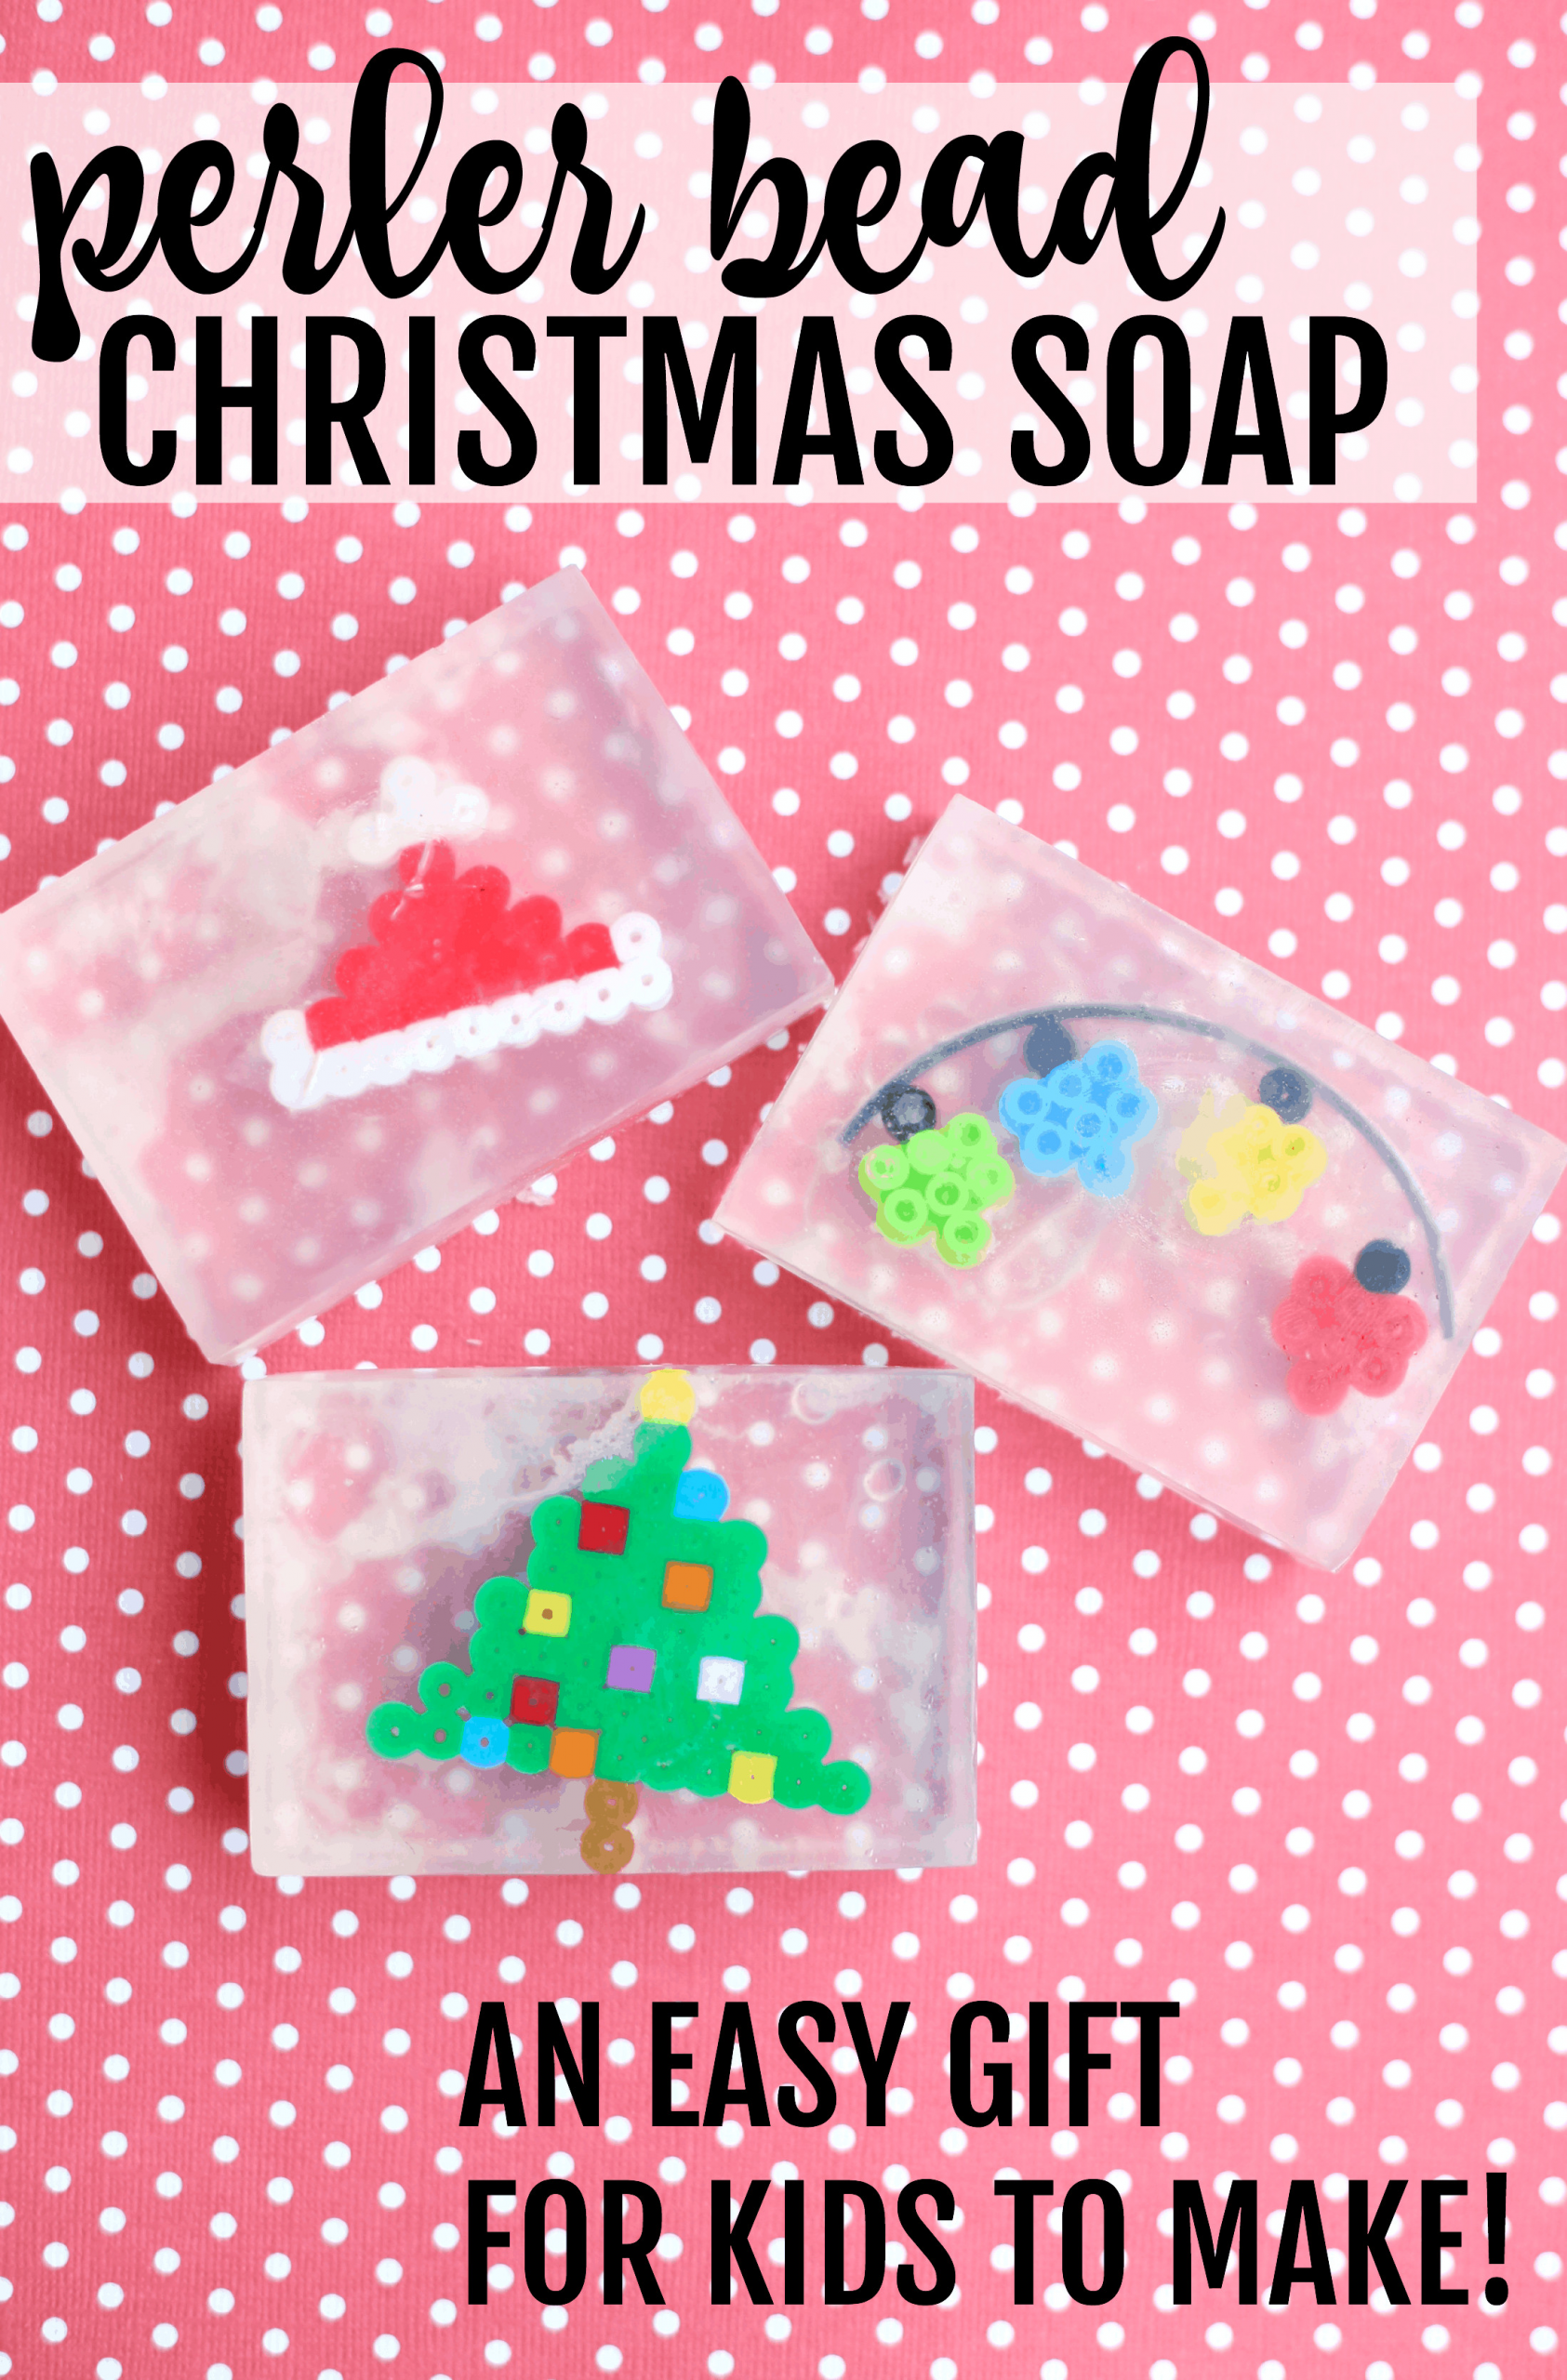 Easy Christmas Gift For Kids To Make
 Perler Bead Christmas Soap Easy Gift for Kids to Make I